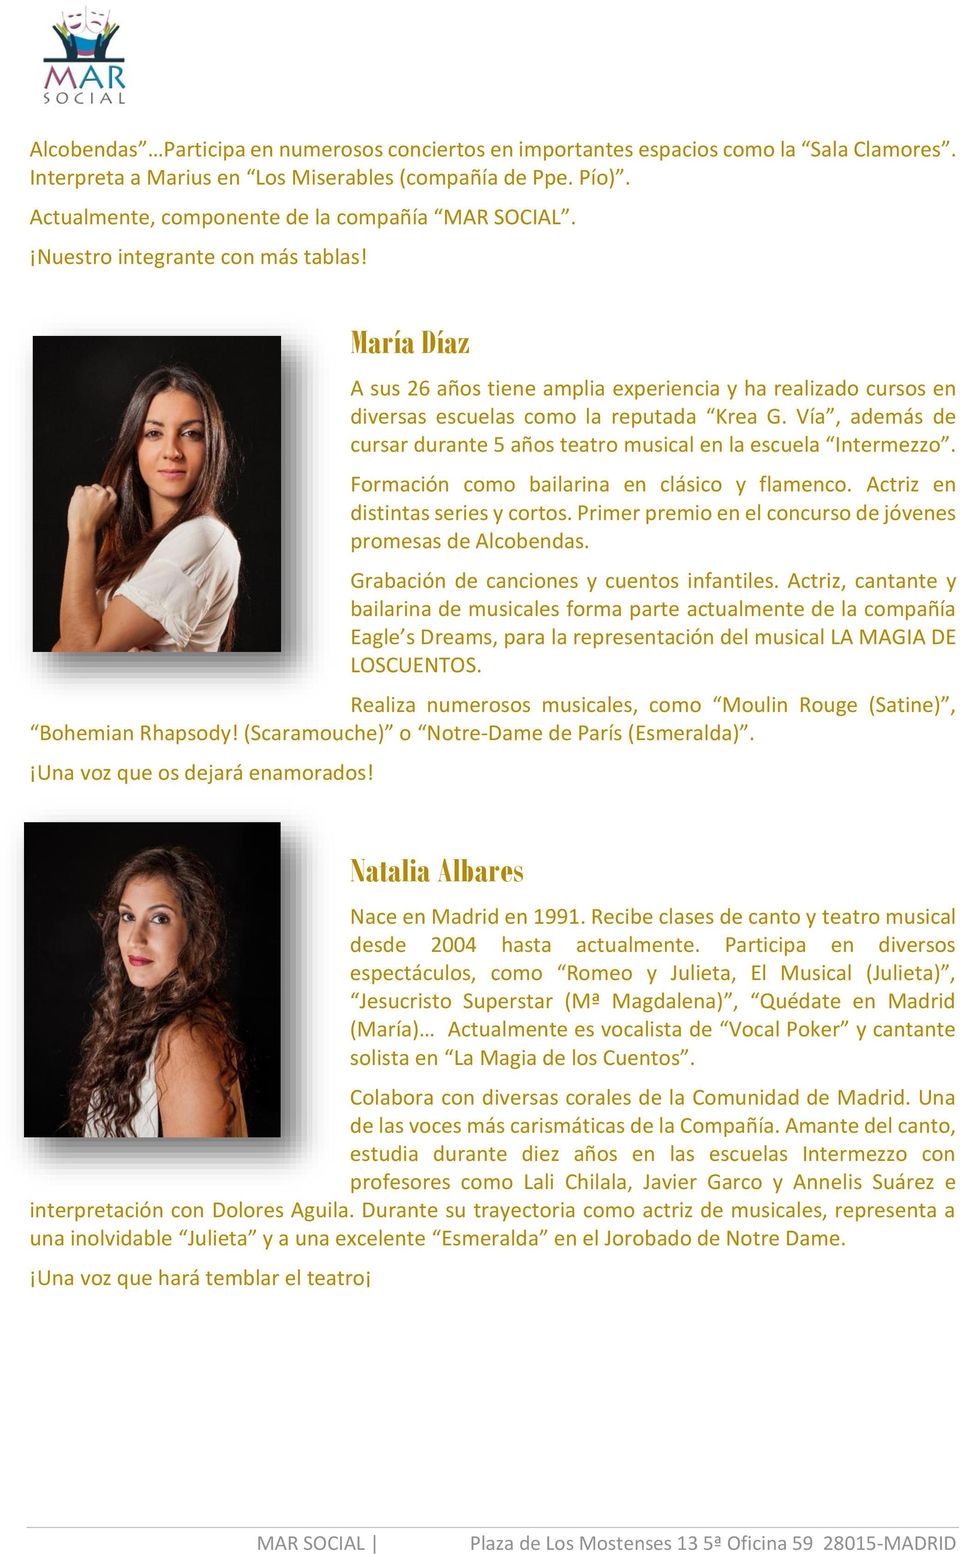 María Díaz A sus 26 años tiene amplia experiencia y ha realizado cursos en diversas escuelas como la reputada Krea G. Vía, además de cursar durante 5 años teatro musical en la escuela Intermezzo.